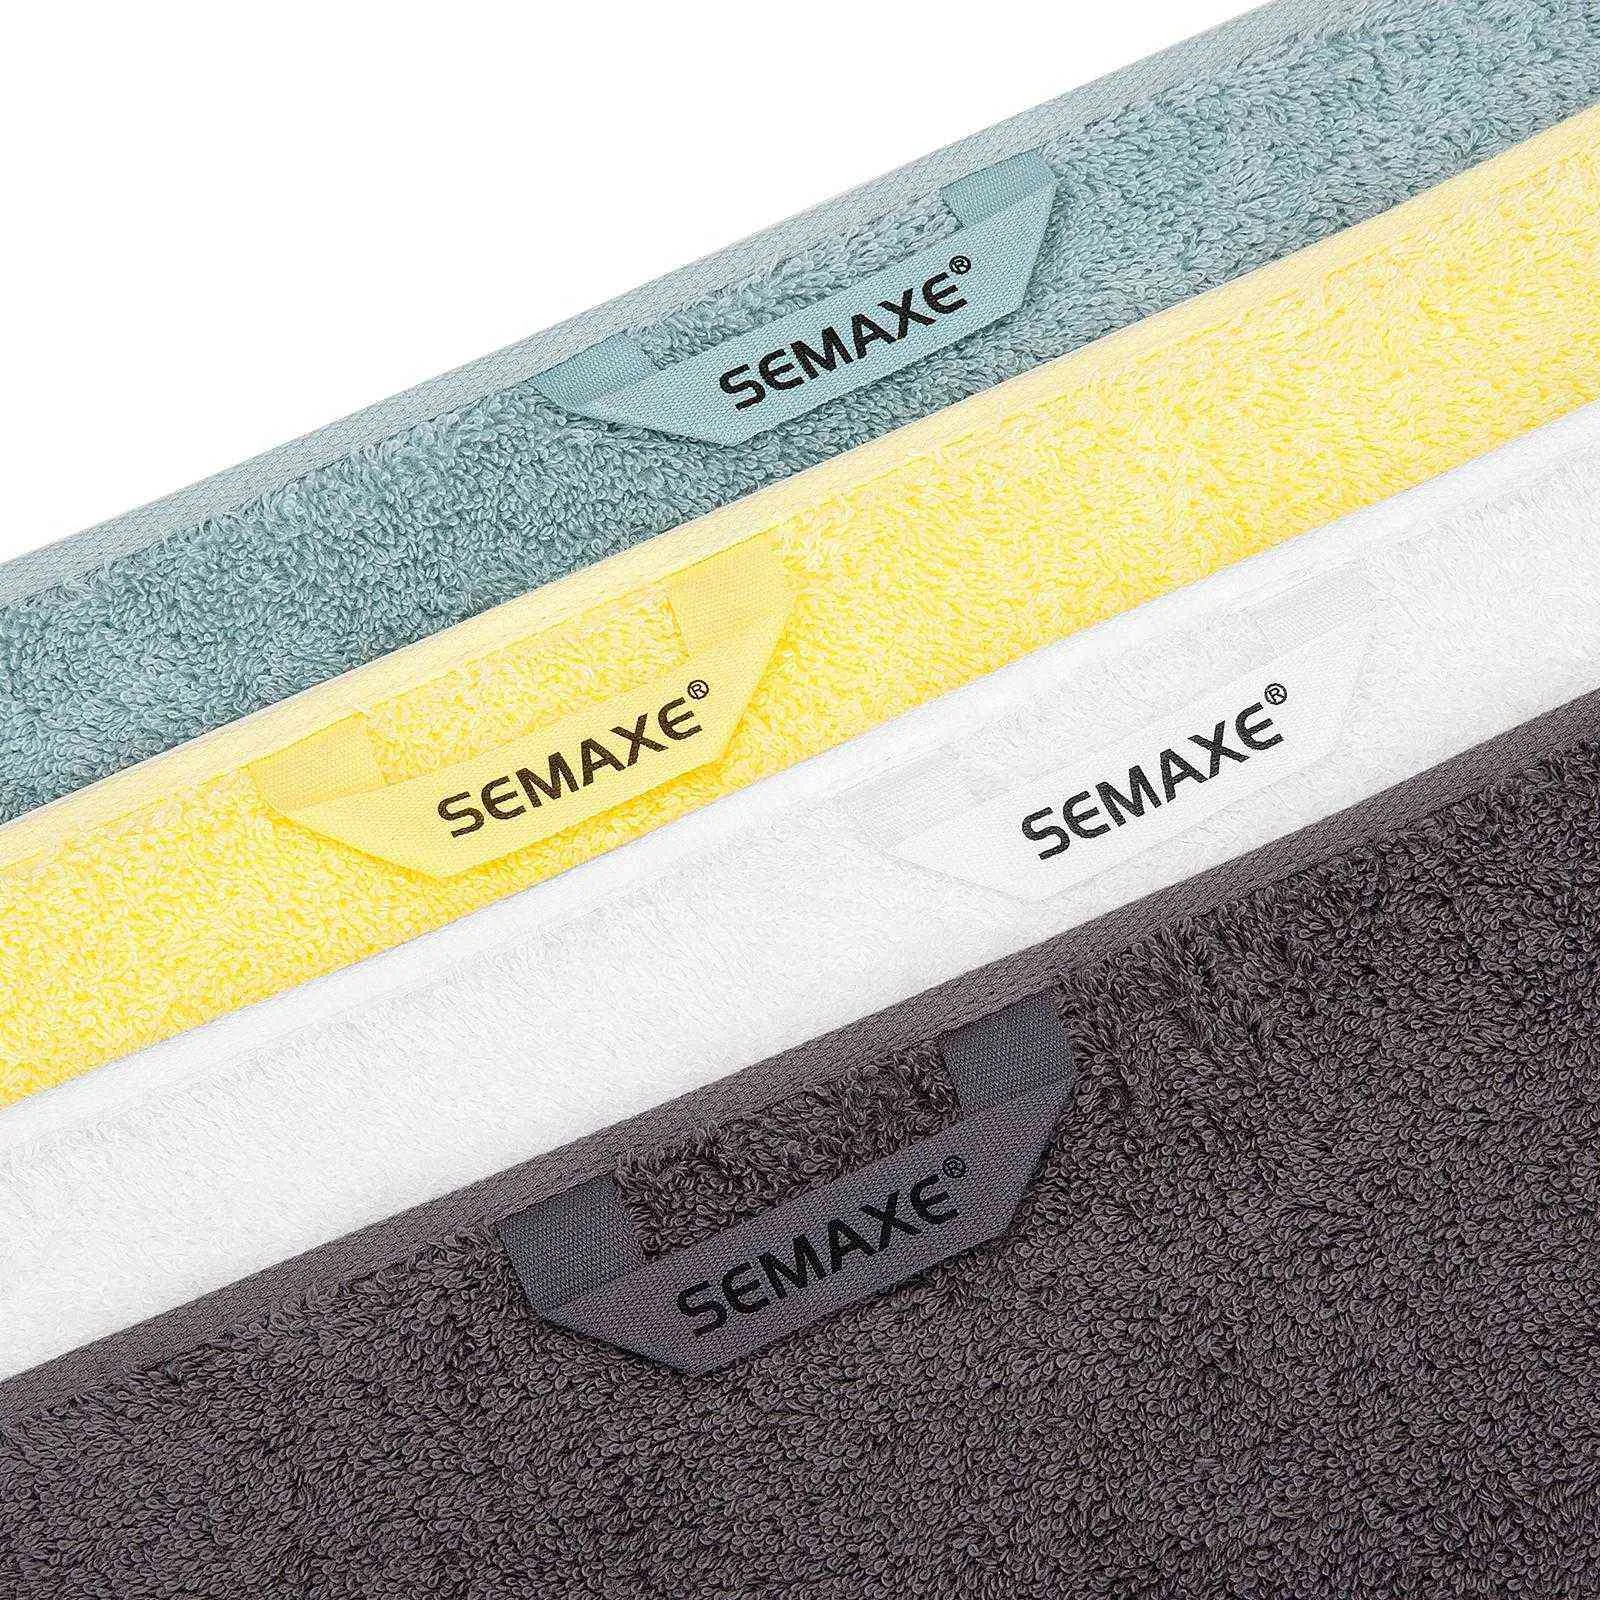 Serviette SEMAXE 40X70cm trousse souple 100% coton inspection de sécurité et pas de décoloration salle de bain fort taux d'absorption d'eau 4 210728